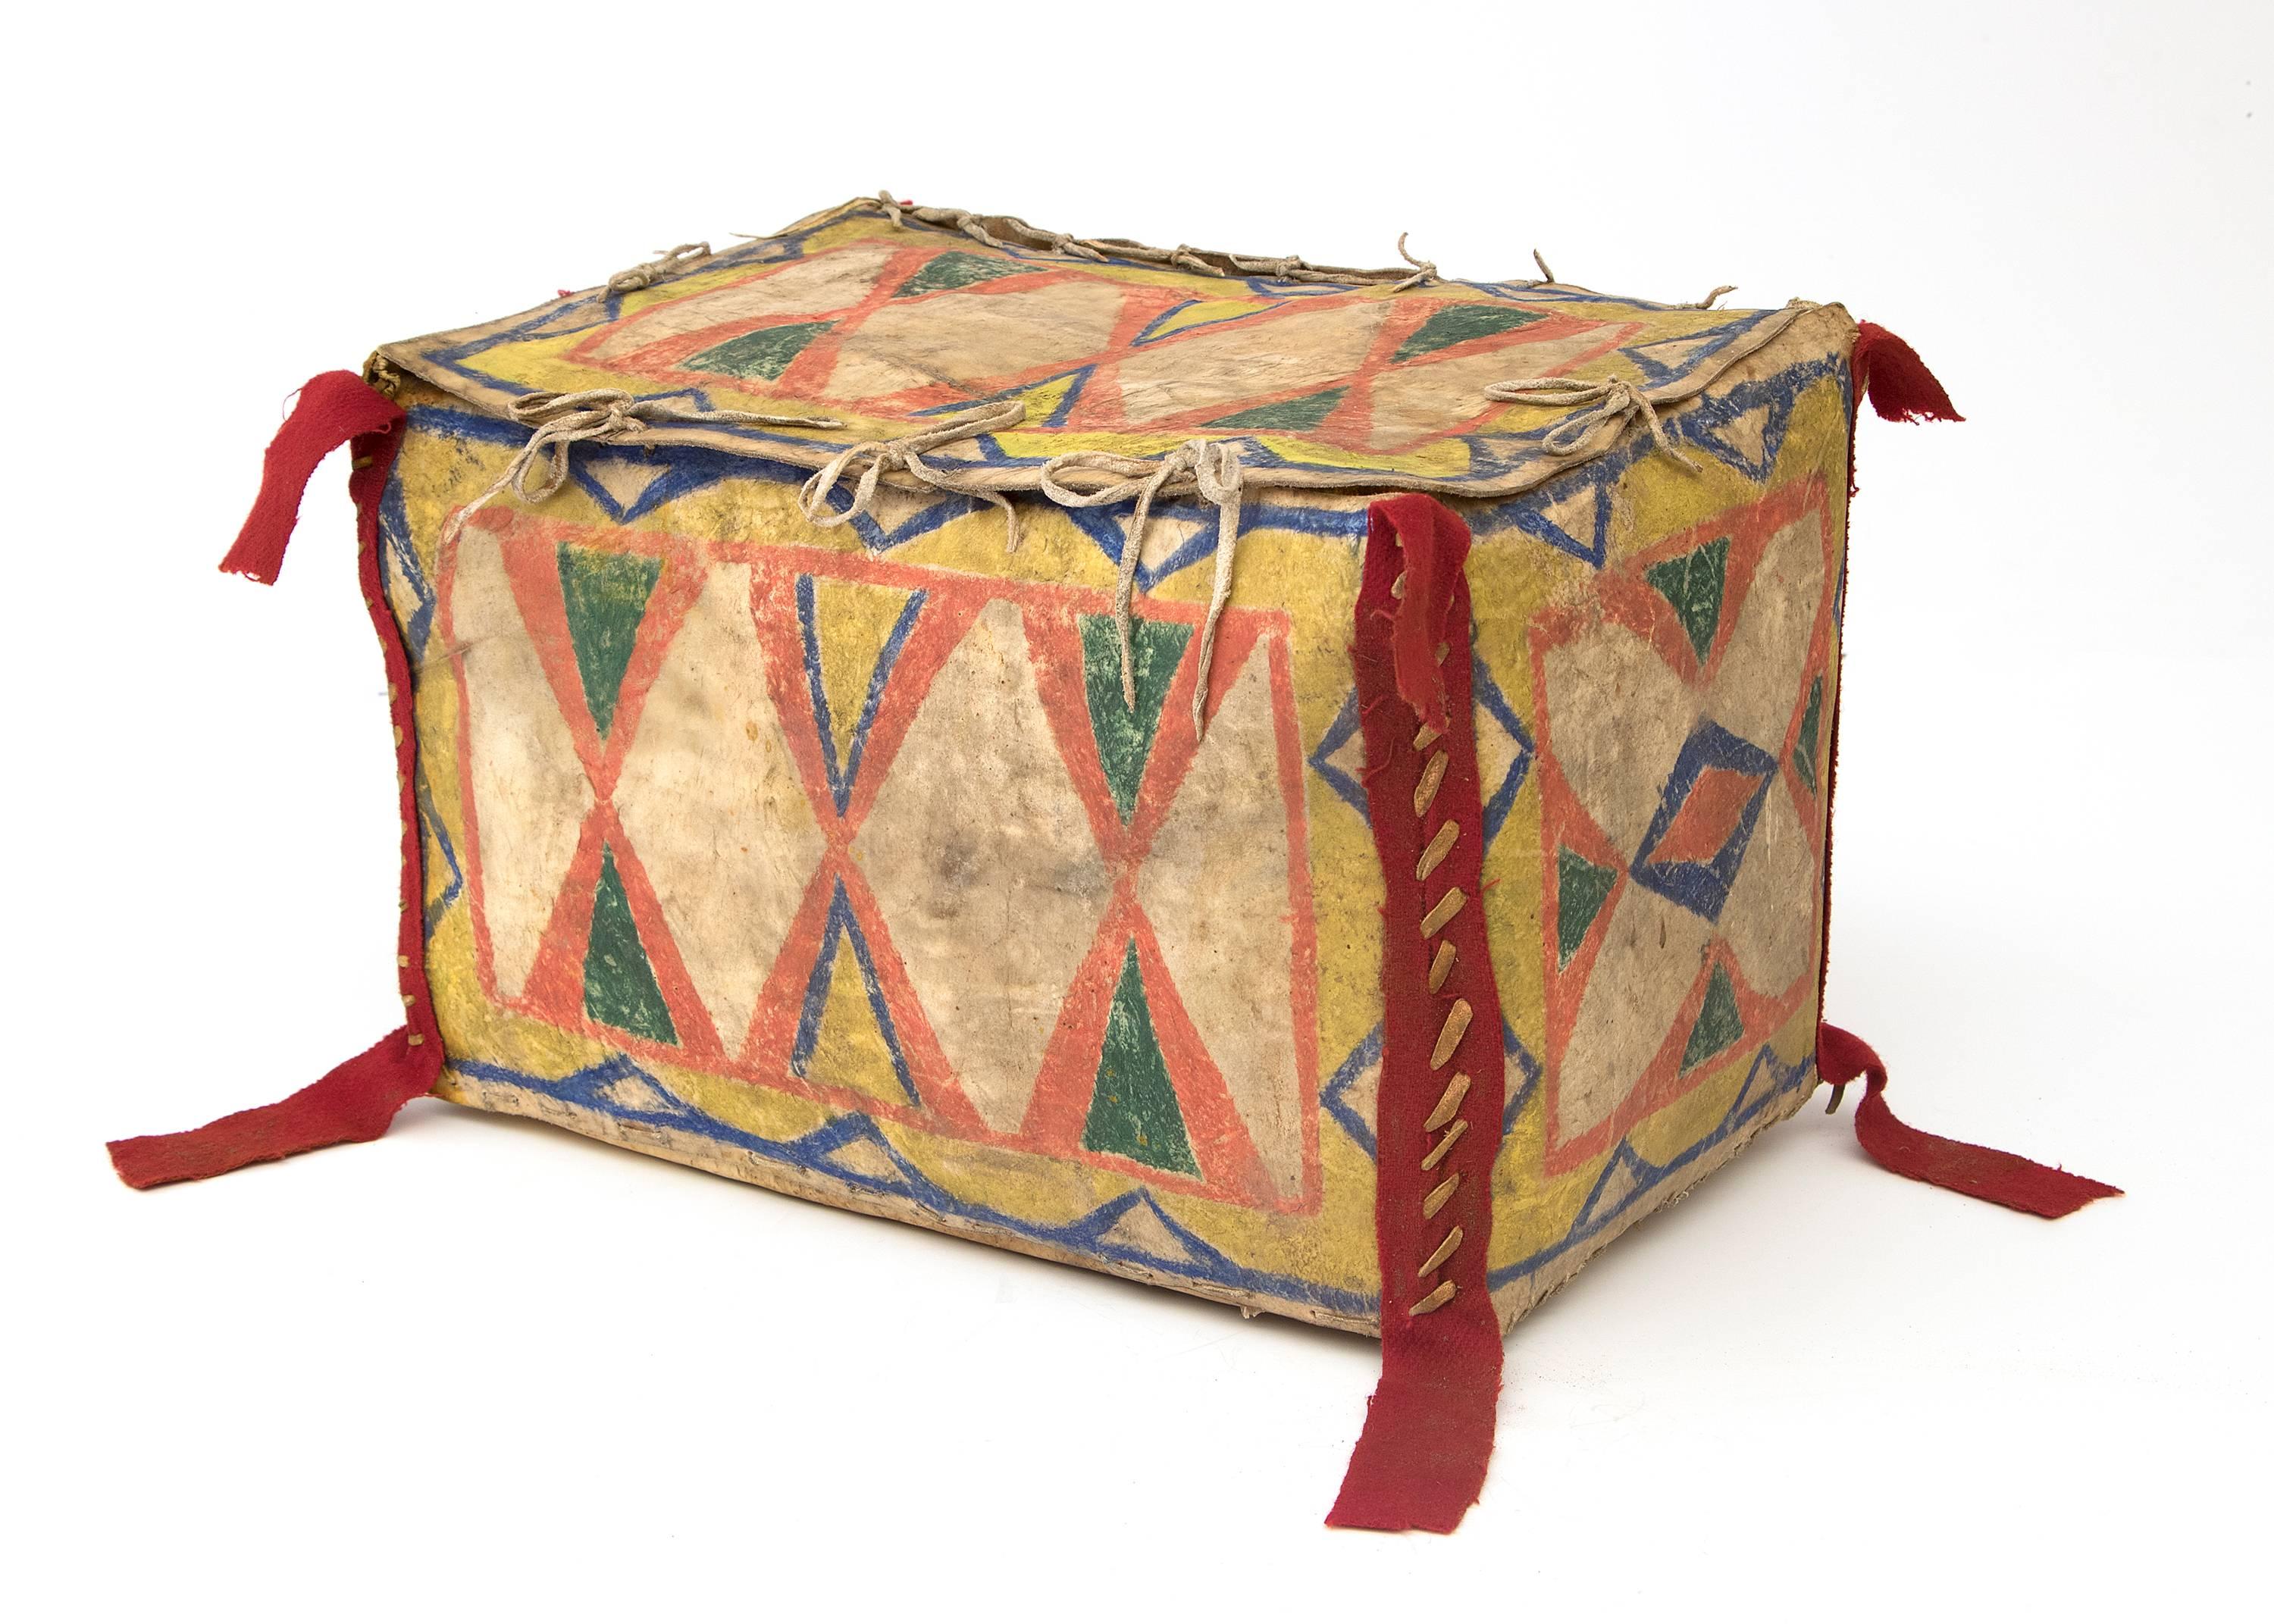 Antike Sioux (Indianer) Parfleche in Kastenform aus Rohleder, die mit natürlichen Pigmenten und rotem Handelsstoff aufwendig mit einem abstrakten Muster aus Sanduhr und geometrischen Motiven bemalt ist.

Zu der Zeit, als diese Karte erstellt wurde,